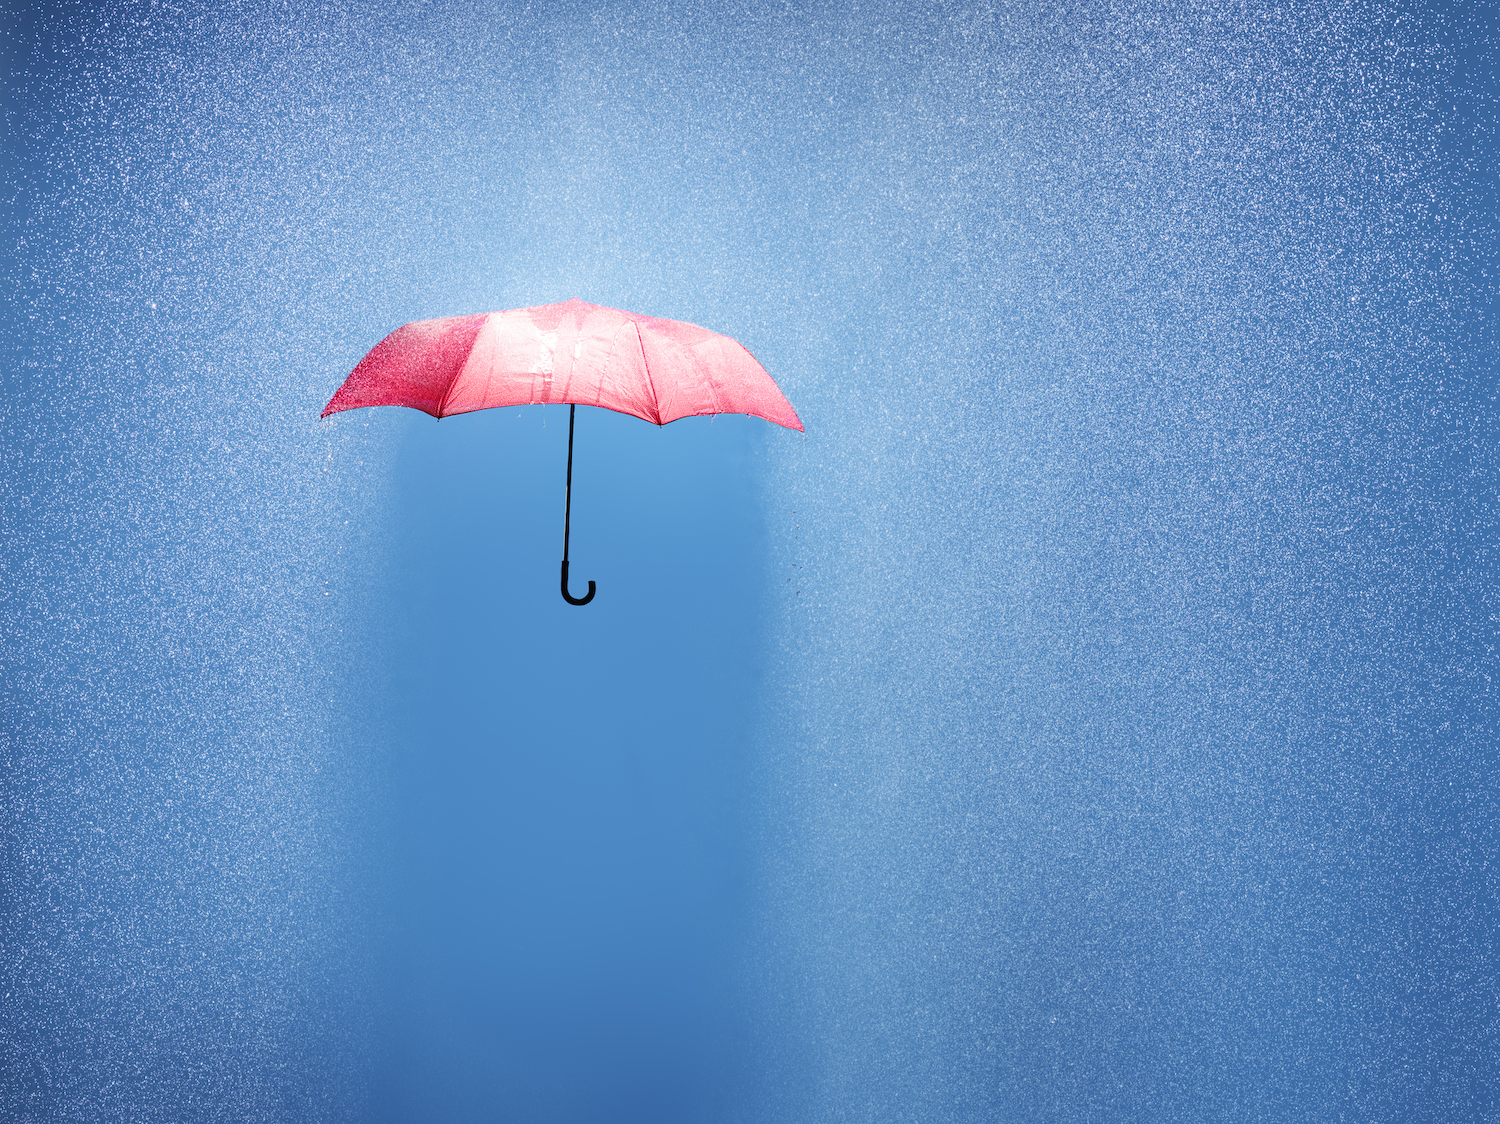 розовый зонт в ливневом дожде, дизайн сфотографирован